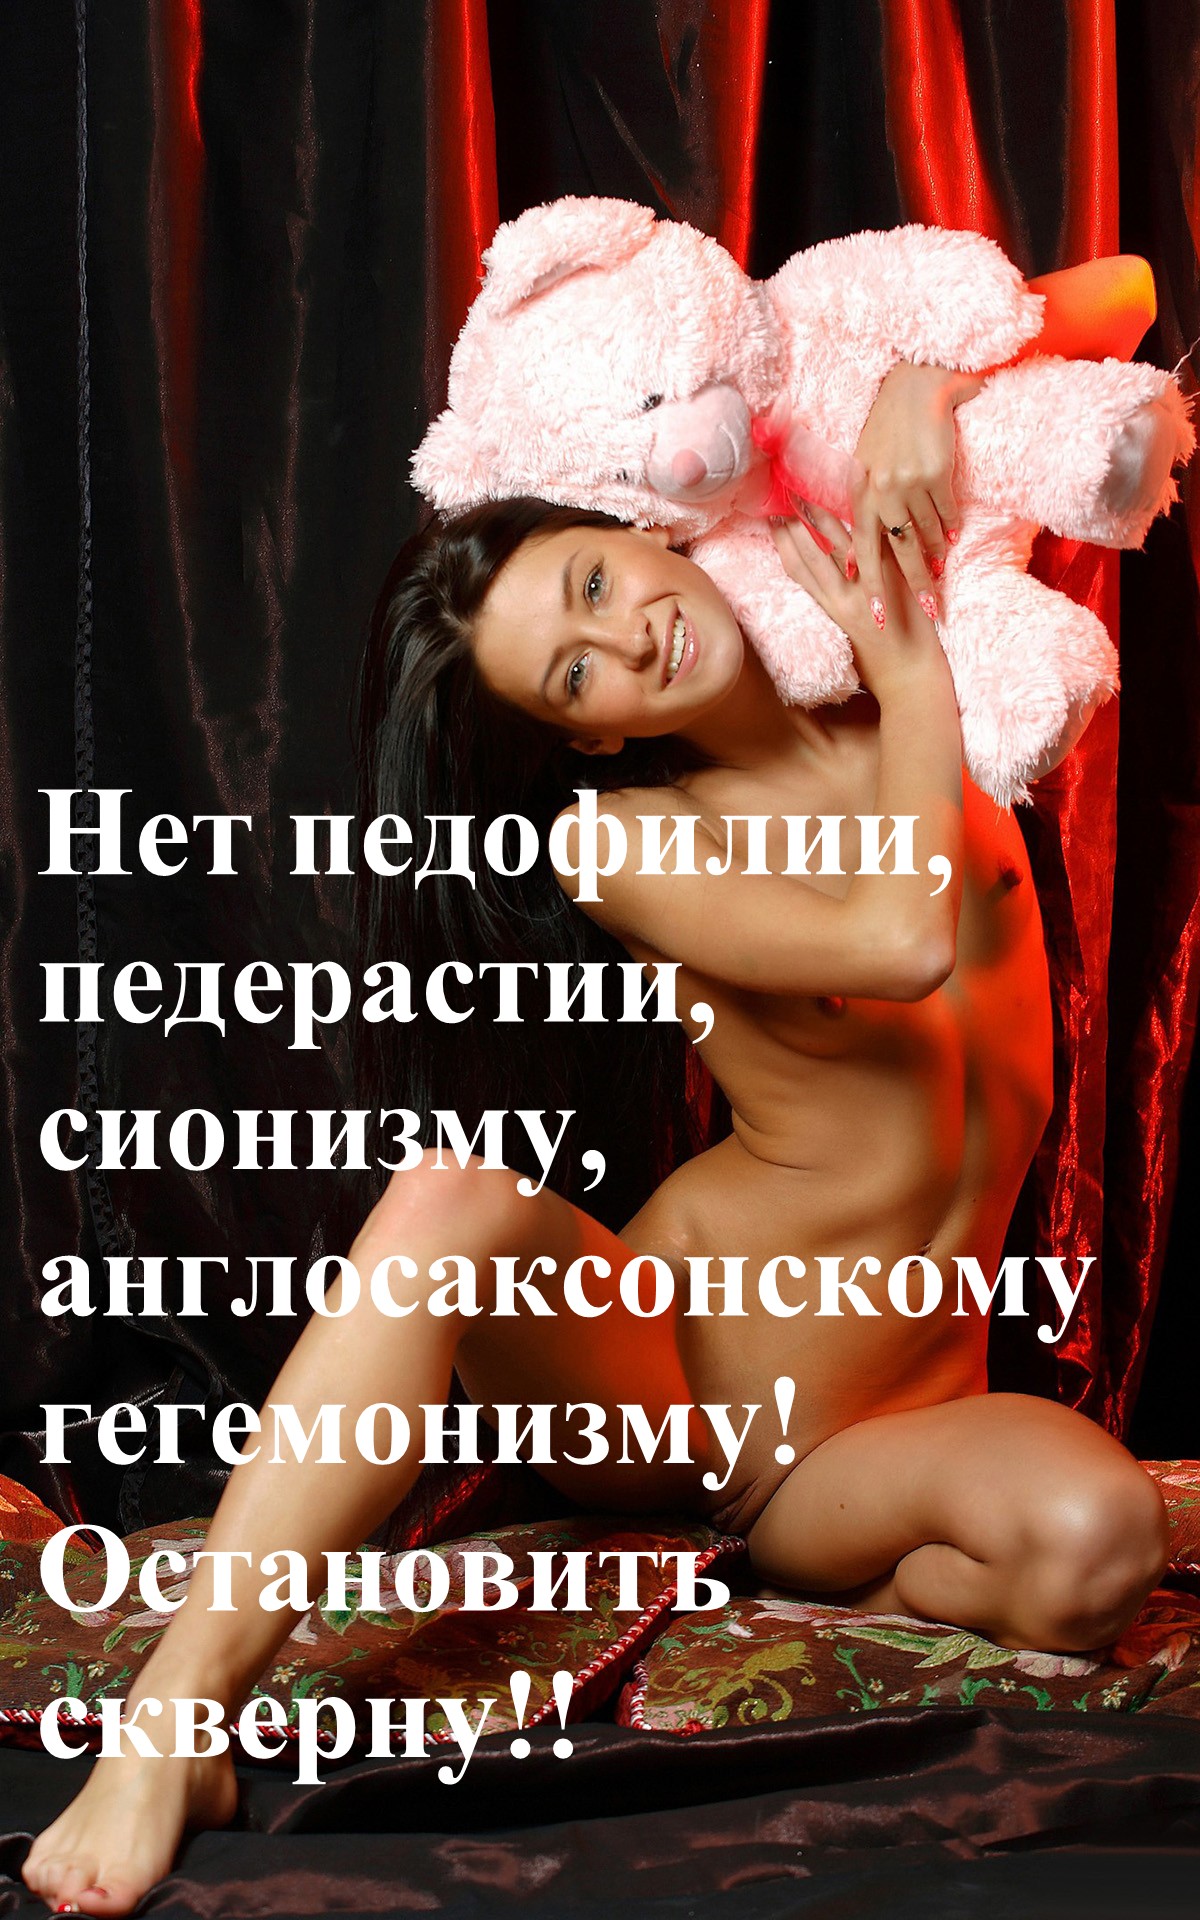 http://i71.fastpic.ru/big/2015/0705/06/21340493246e214a61fedc07e2245006.jpg